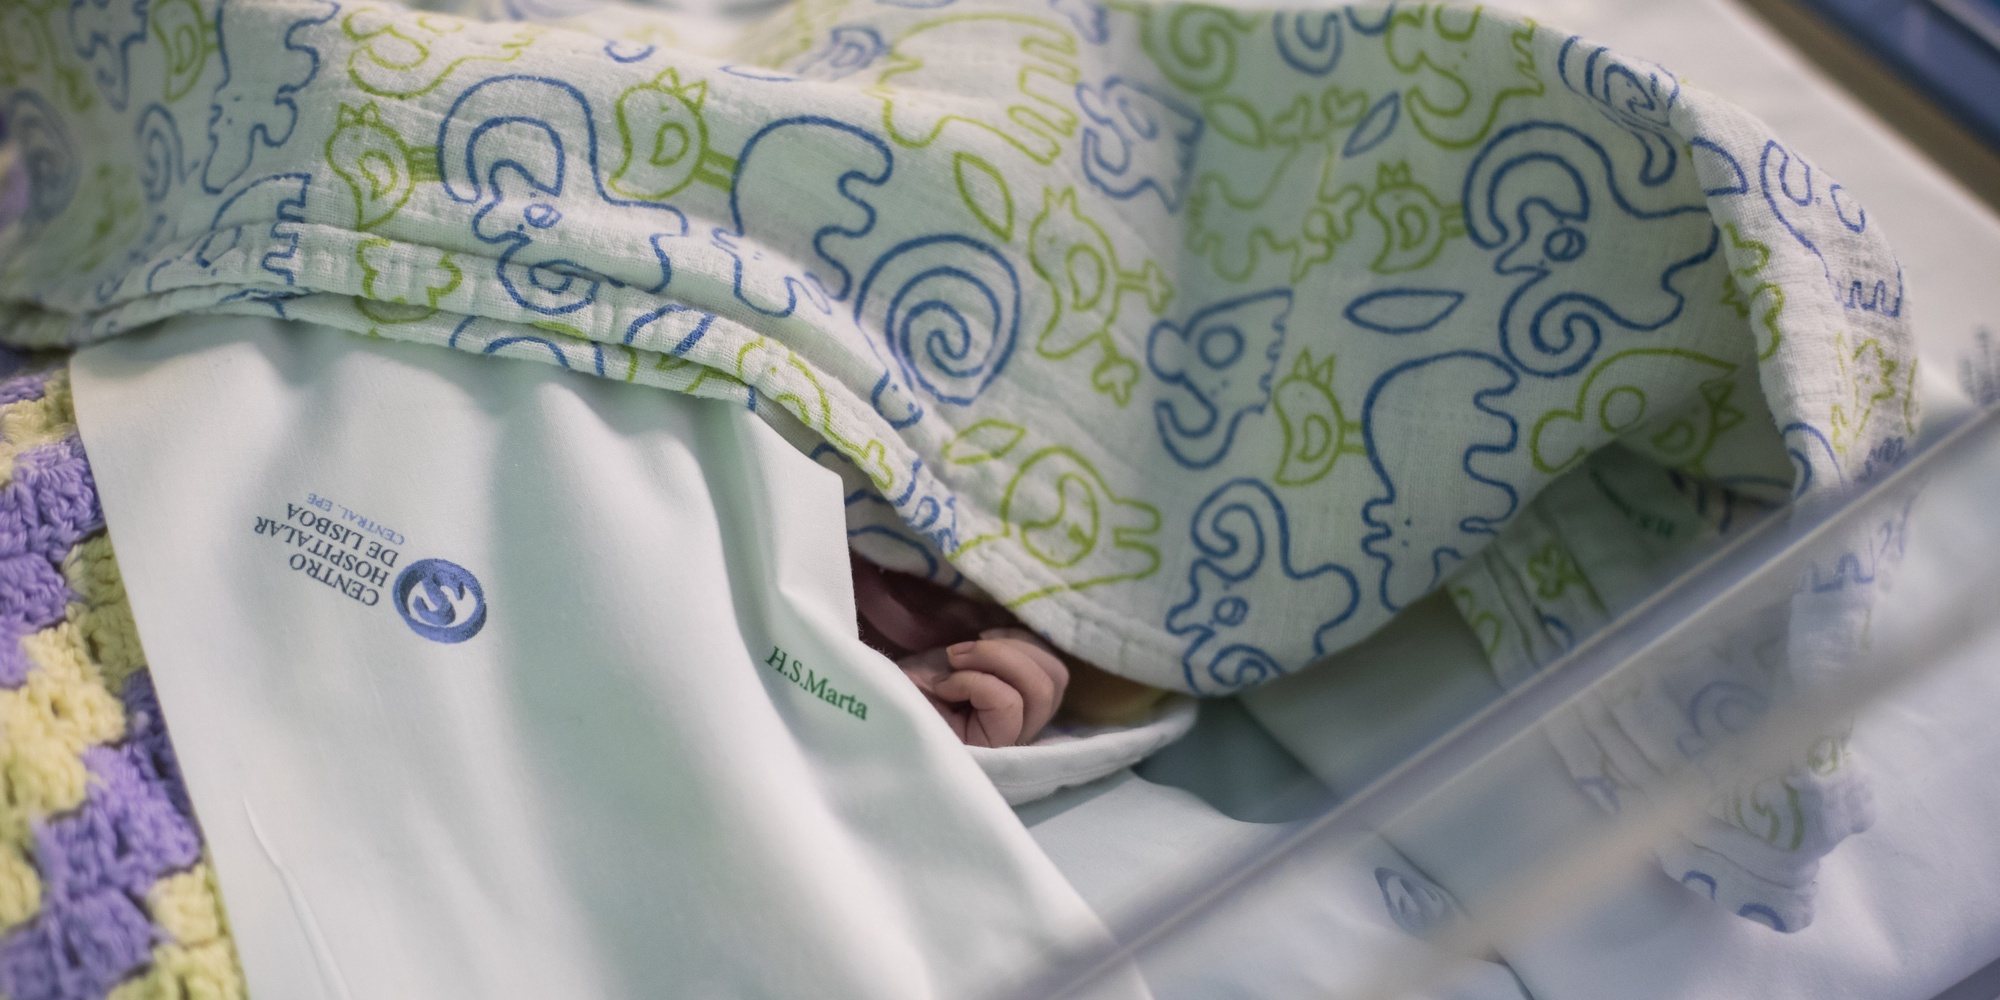 Um bebé internado no serviço de Cardiologia Pediátrica do Hospital de Santa Marta, no âmbito de uma reportagem sobre sequelas da covid-19 em crianças e adultos na unidade hospitalar, em Lisboa, 10 de fevereiro de 2021. (ACOMPANHA TEXTO DA LUSA DO DIA 13 DE FEVEREIRO DE 2021). JOSÉ SENA GOULÃO/LUSA